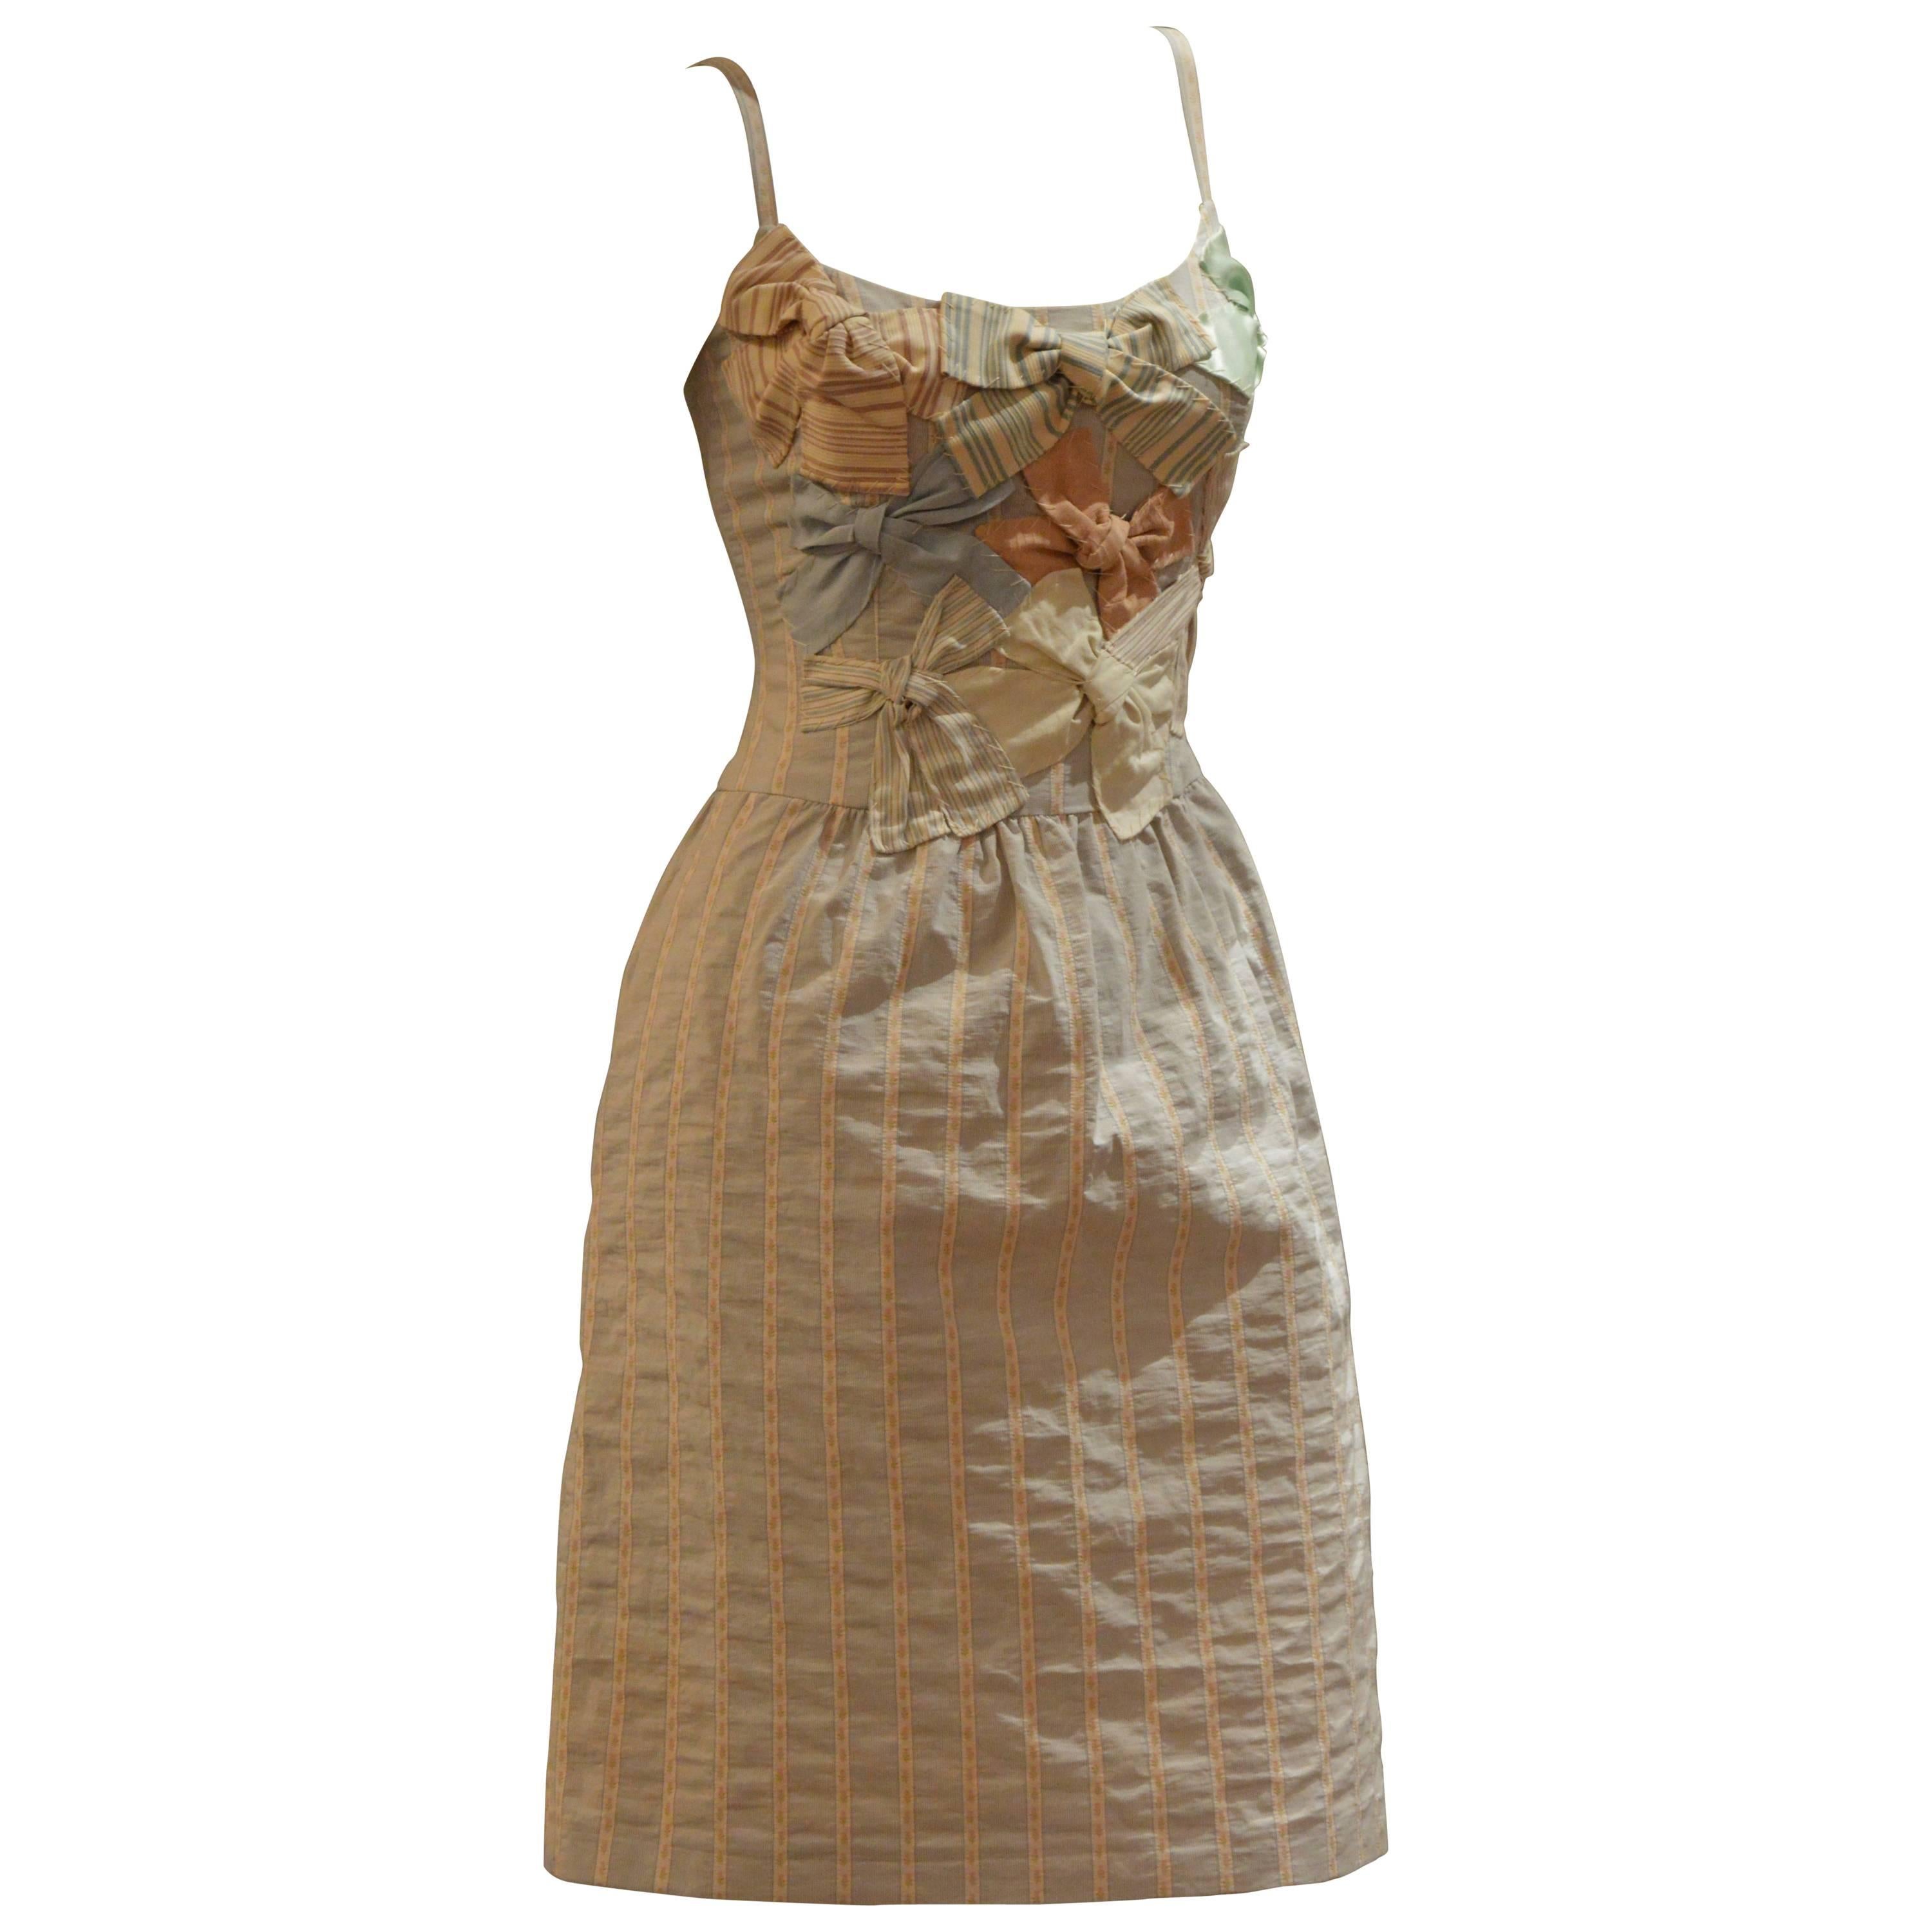 Elegant and Rare Moschino Bow Coton Dress